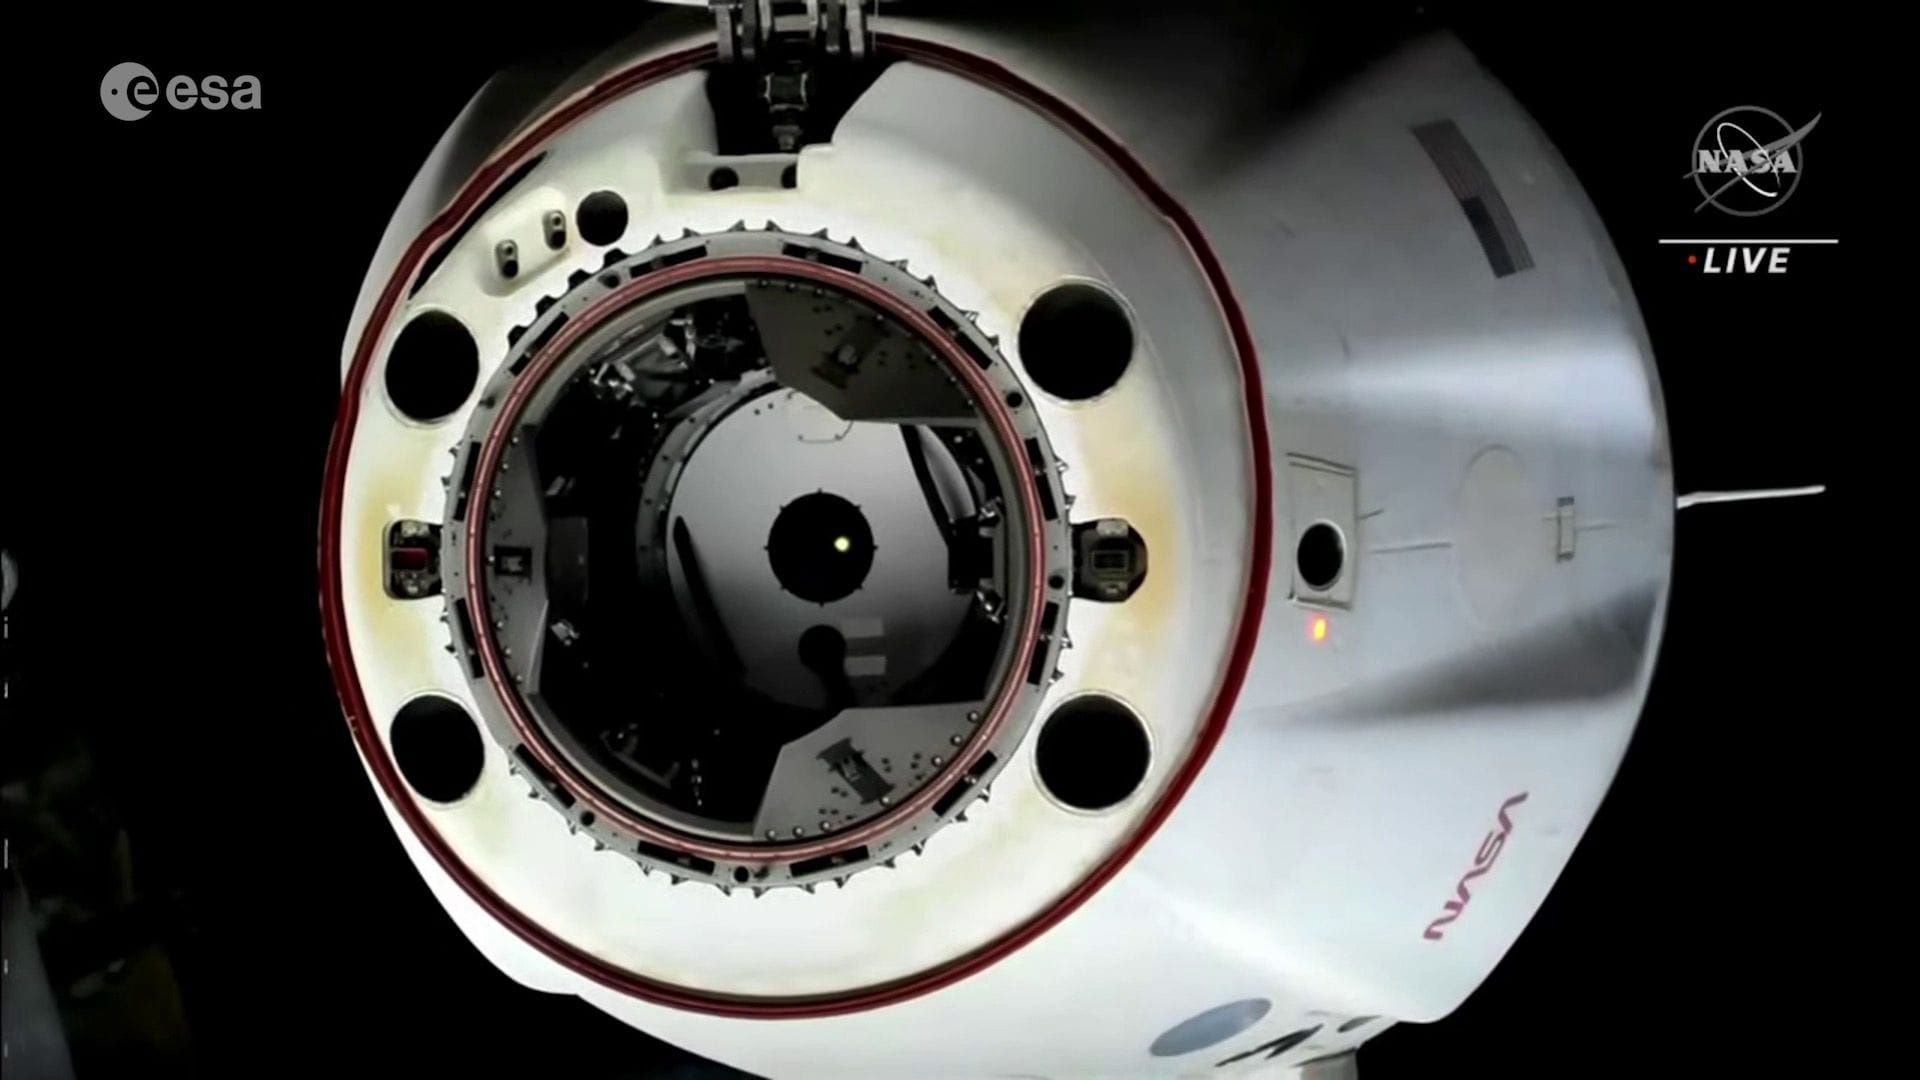 Mit dieser Raumkapsel flog Matthias Maurer nach seinem sechsmonatigen Aufenthalt auf der ISS zurück zur Erde. Die Aufnahme zeigt das Raumschiff kurz nach dem Abdocken von der ISS.